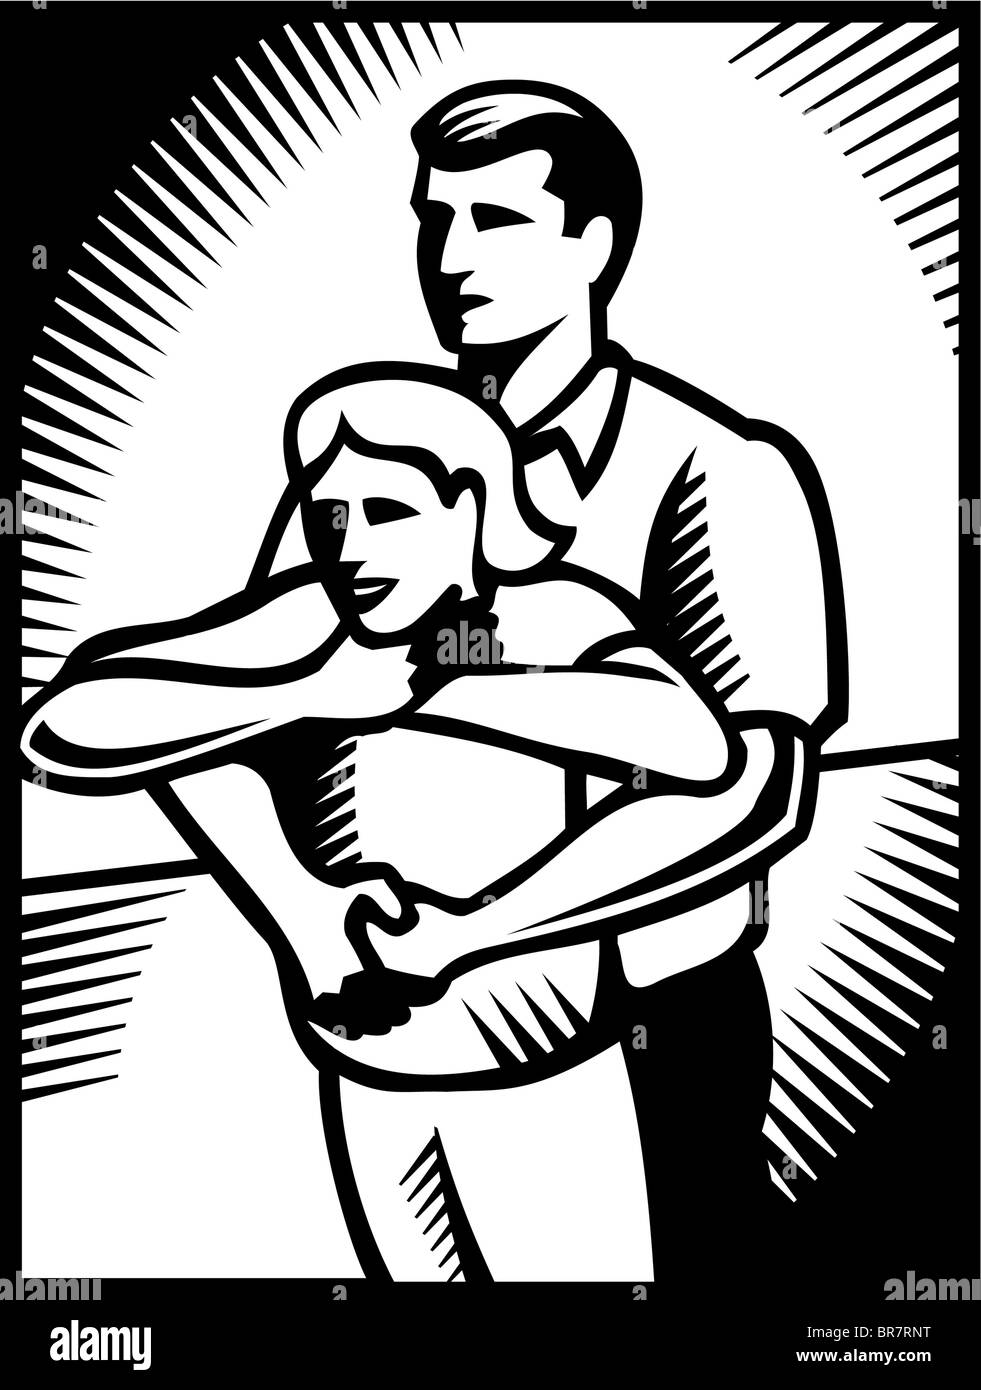 Ein Mann Hymlic Manöver durchführen, auf ein Mädchen in schwarz-weiß dargestellt Stockfoto